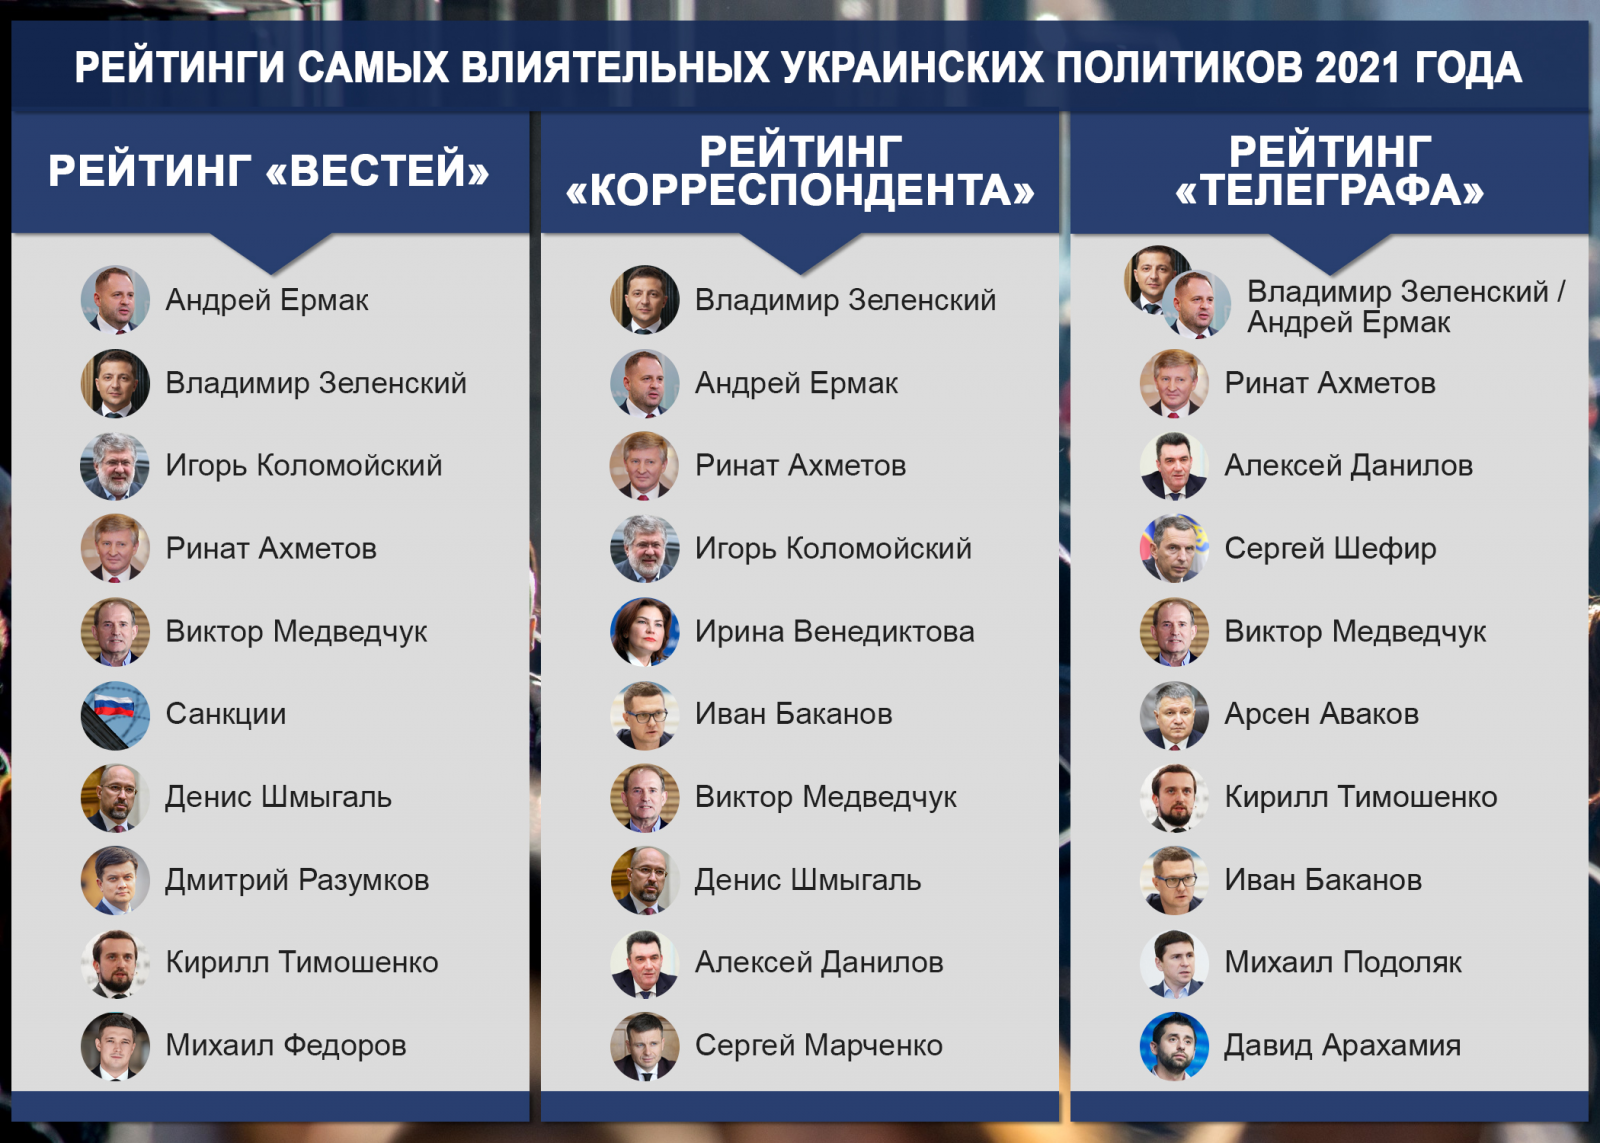 Джангиров: Зеленский не достиг цели - Медведчук даже под прессом режима стал сильнее и влиятельнее